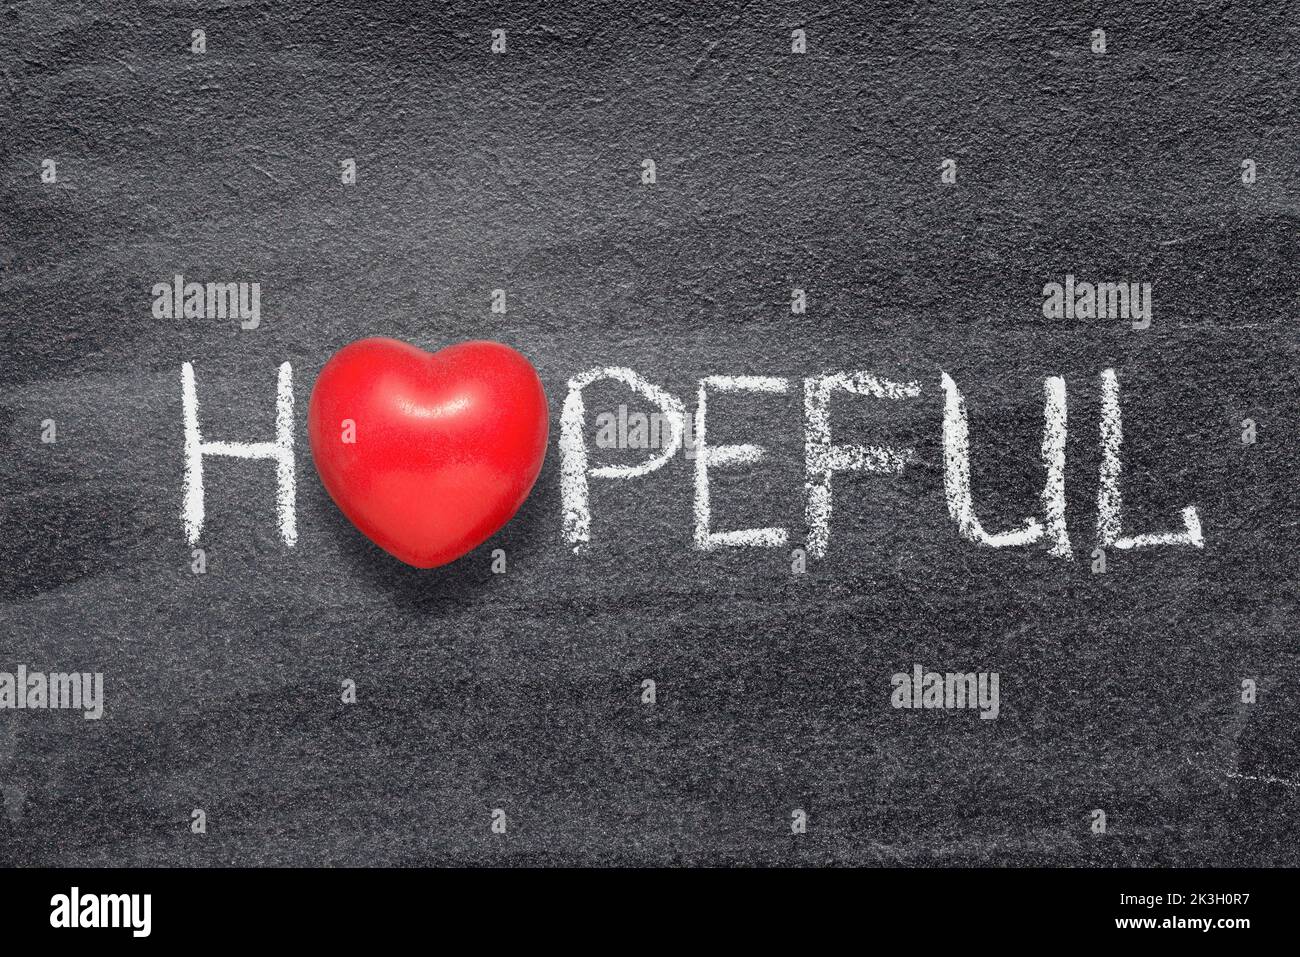 Palabra esperanzadora escrita a mano en una pizarra con el símbolo rojo del corazón en lugar de O Foto de stock